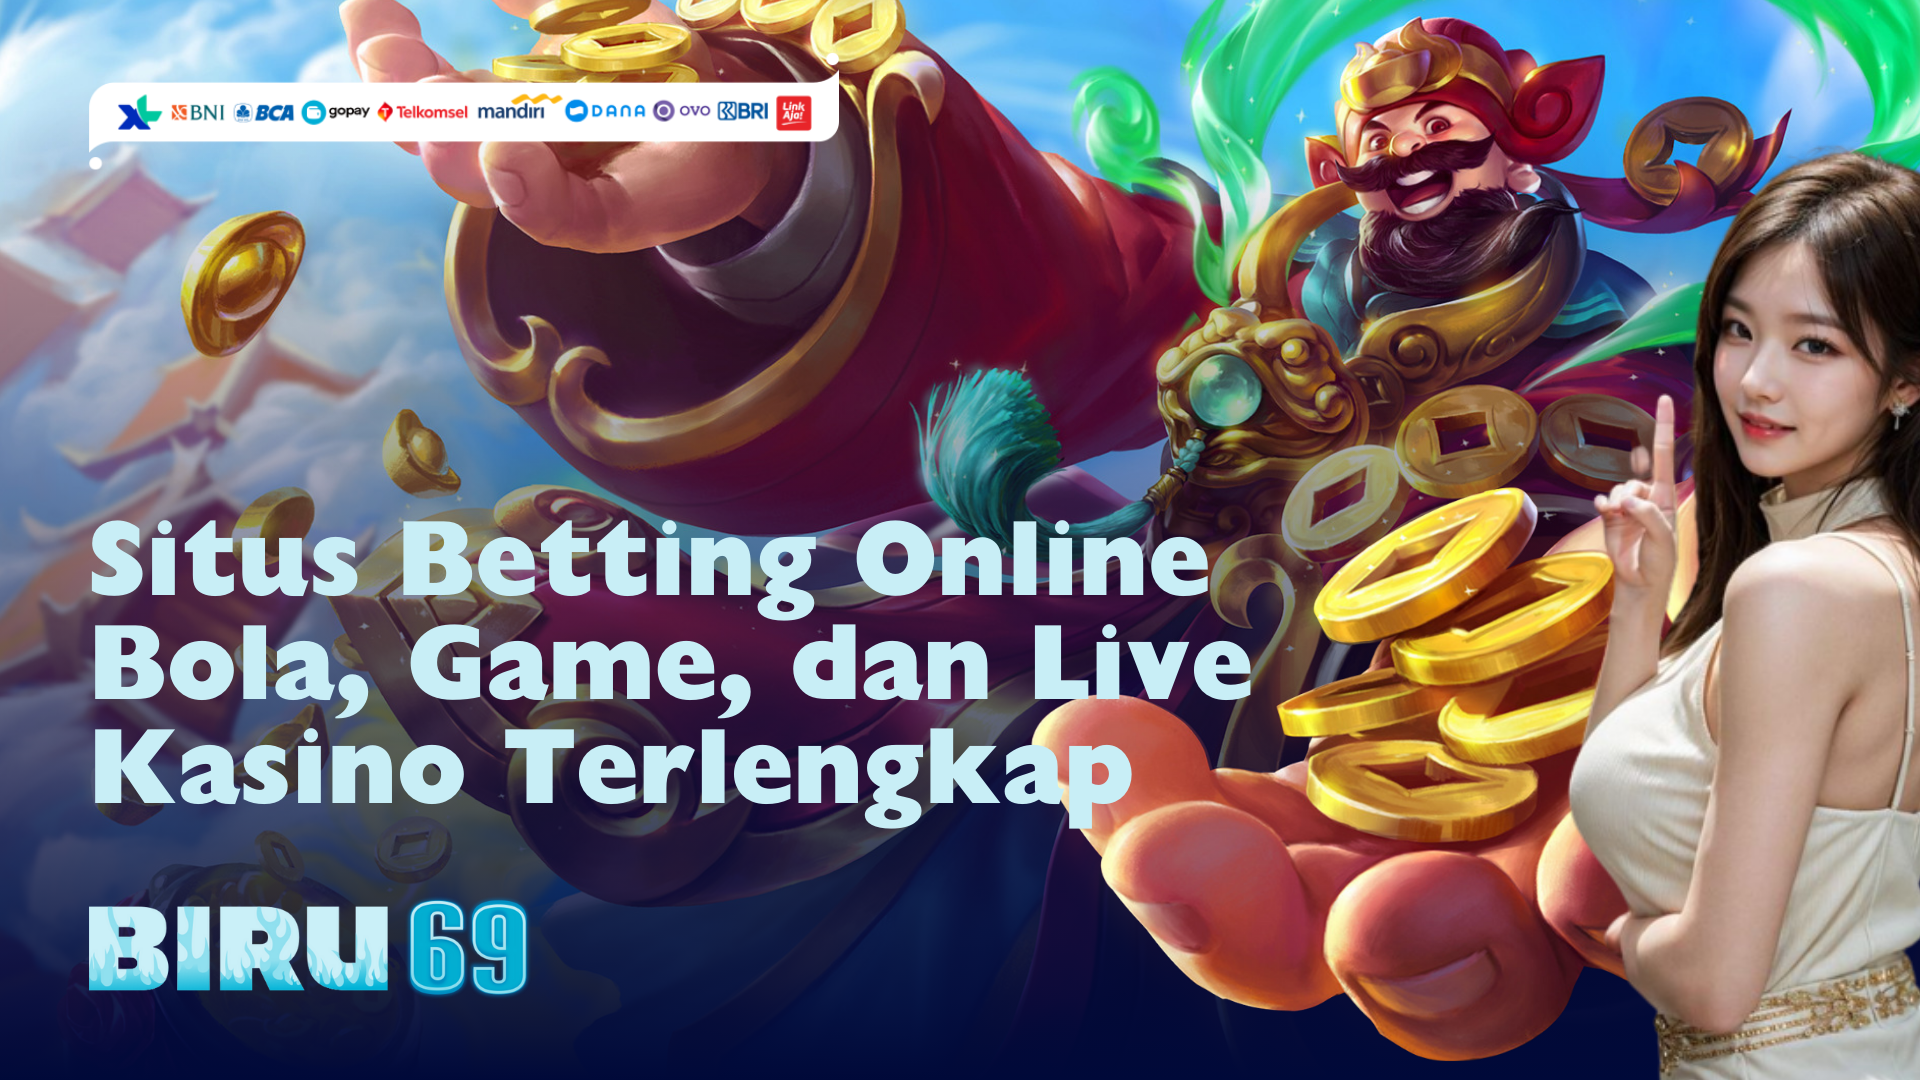 Situs Betting Online Bola, Game, dan Live Kasino Terlengkap